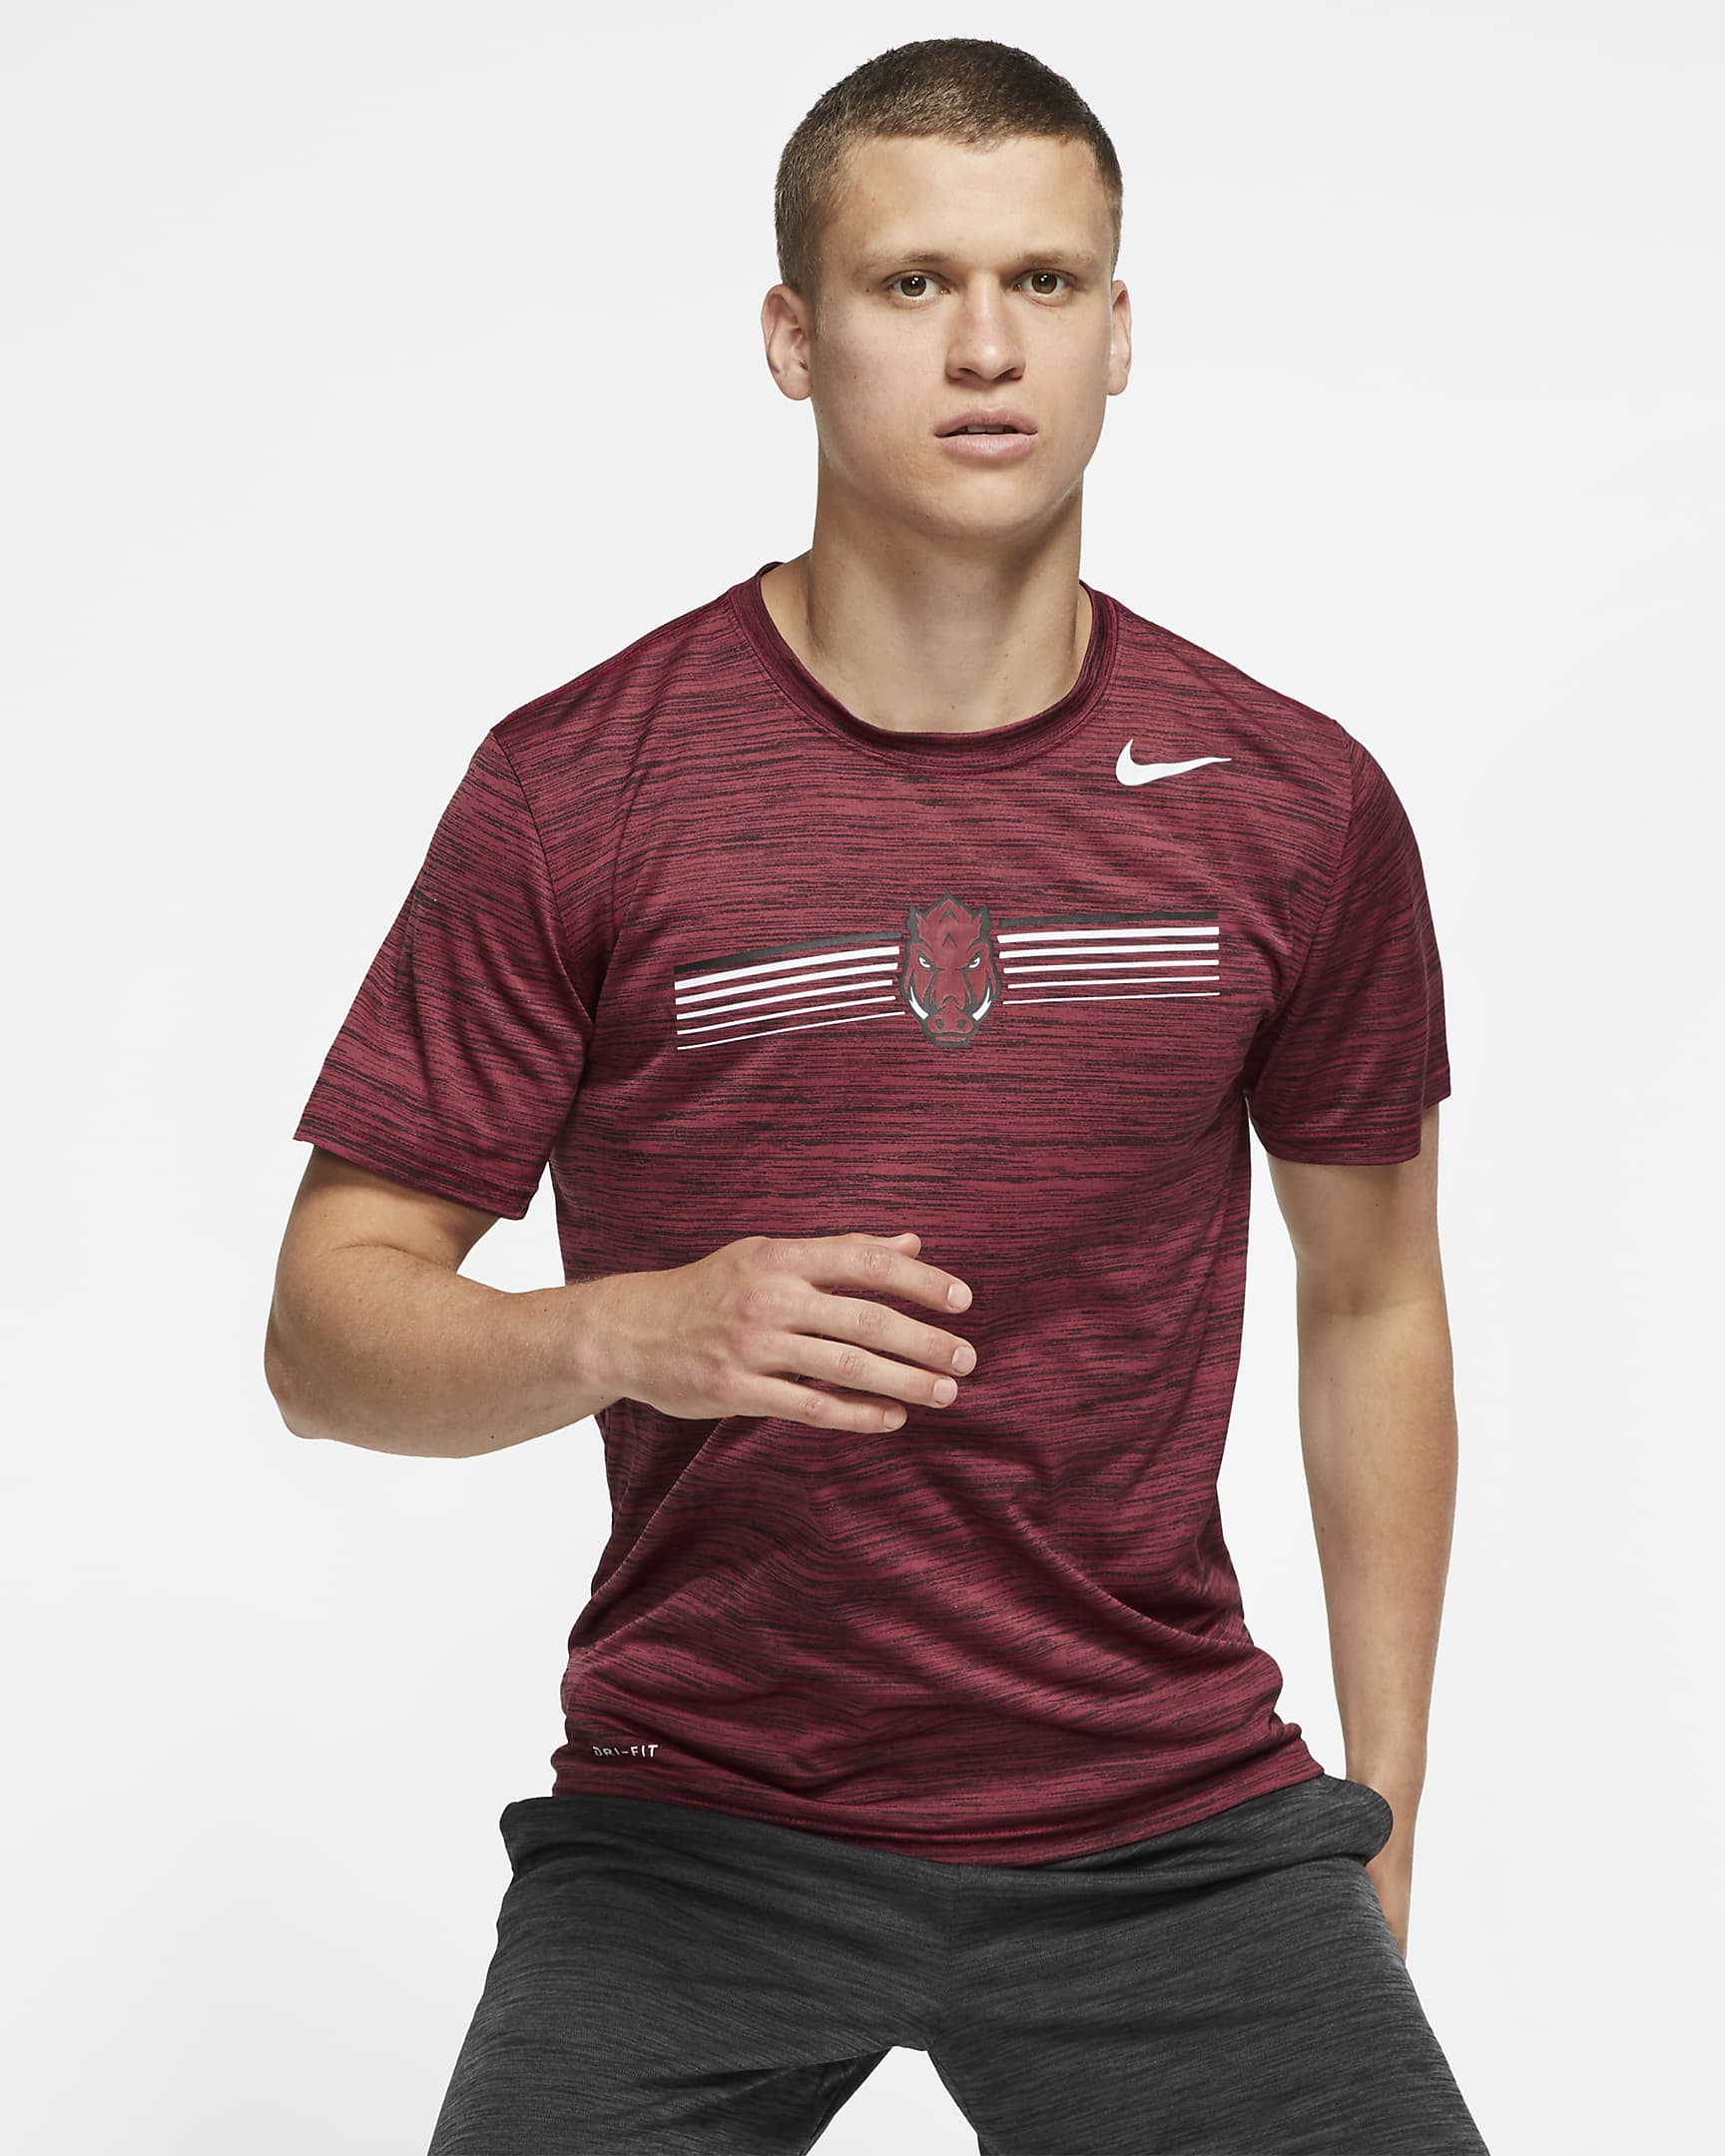 Nike College Dri-FIT Legend Velocity (Arkansas) Men's T-Shirt. Nike.com